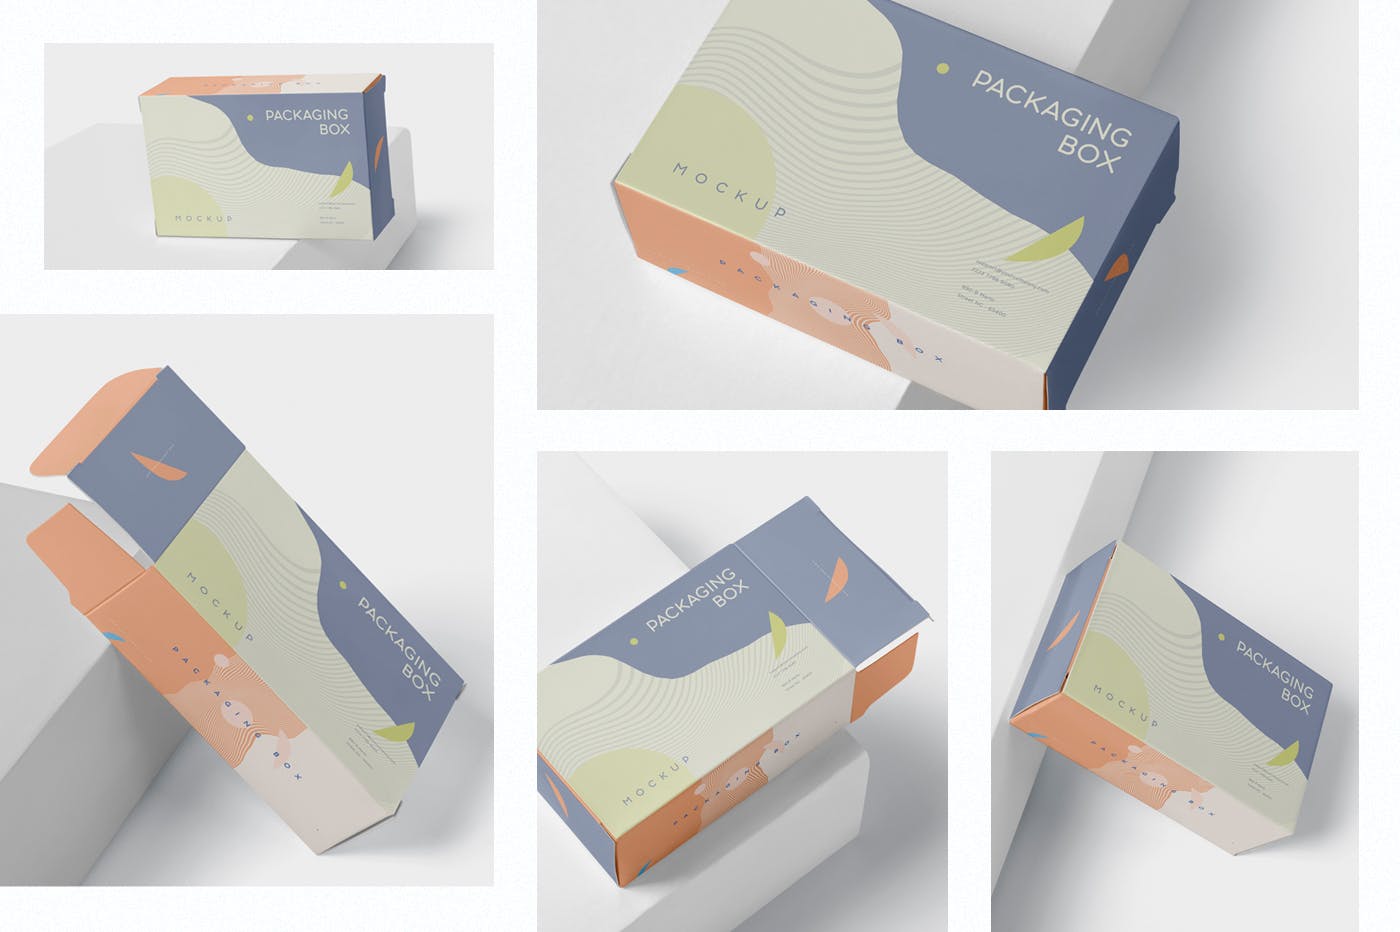 扁平矩形产品包装盒效果图大洋岛精选 Package Box Mockup – Slim Rectangle Shape插图1